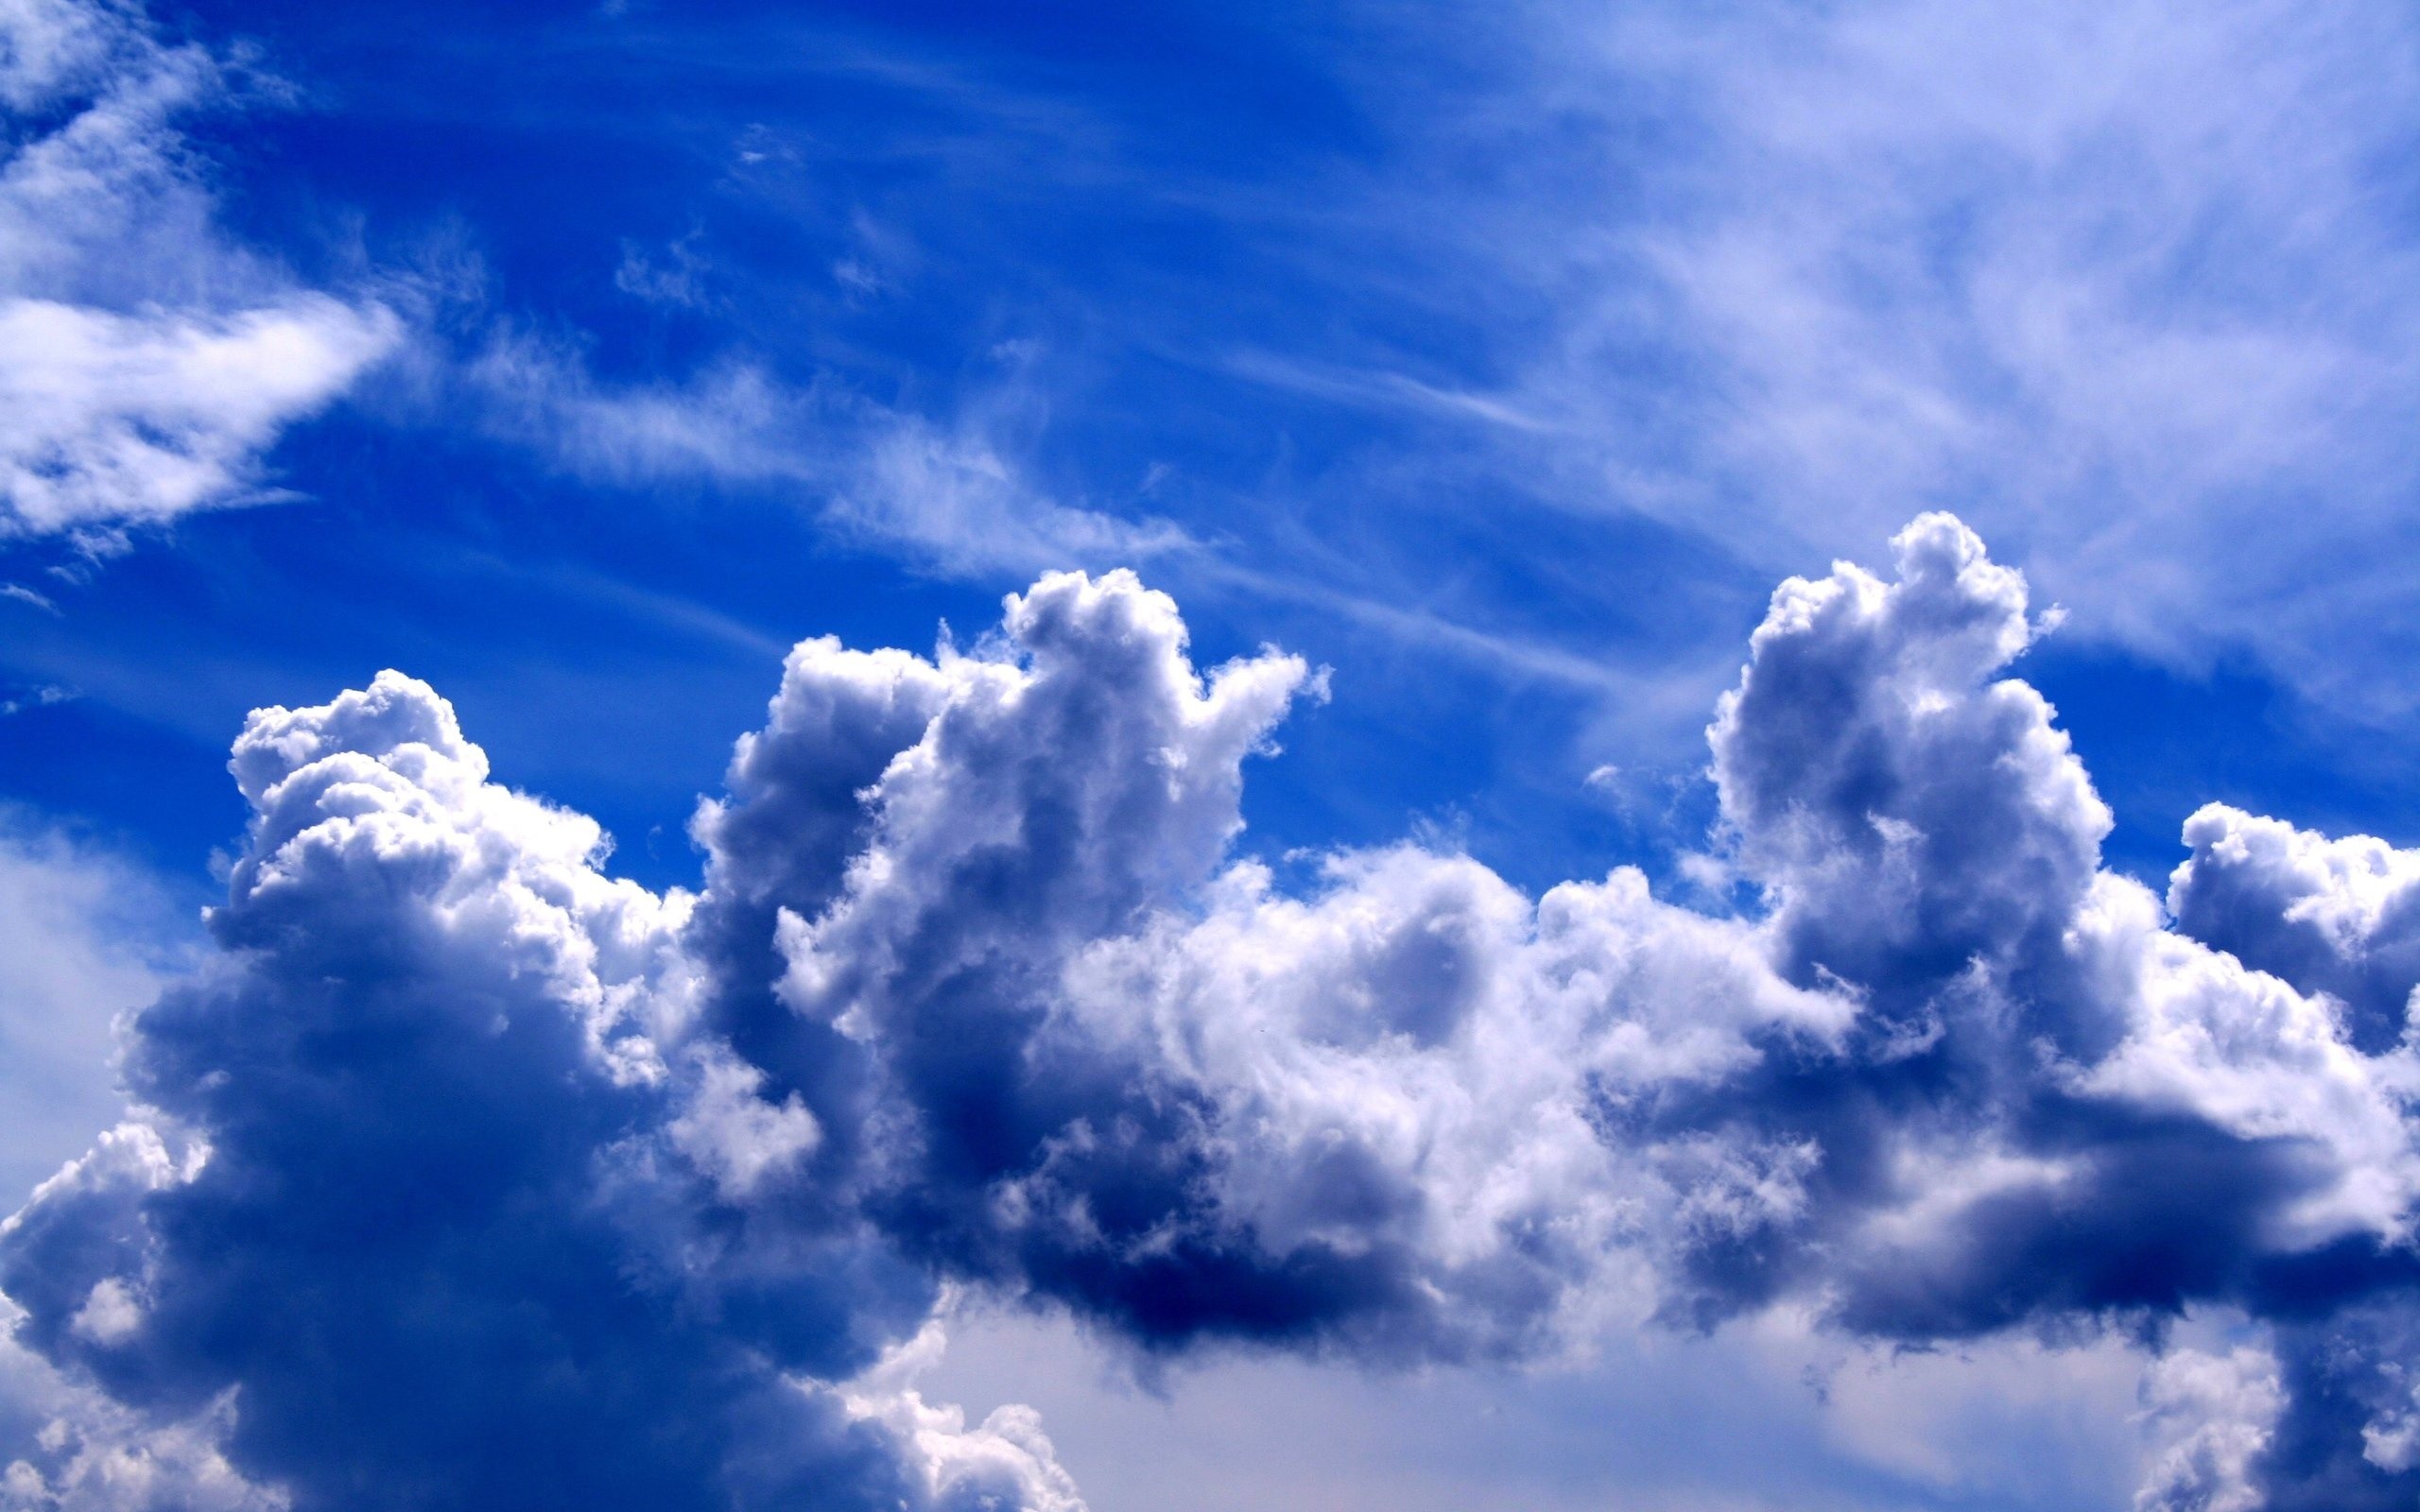 blaue wolkentapete,himmel,wolke,tagsüber,blau,kumulus